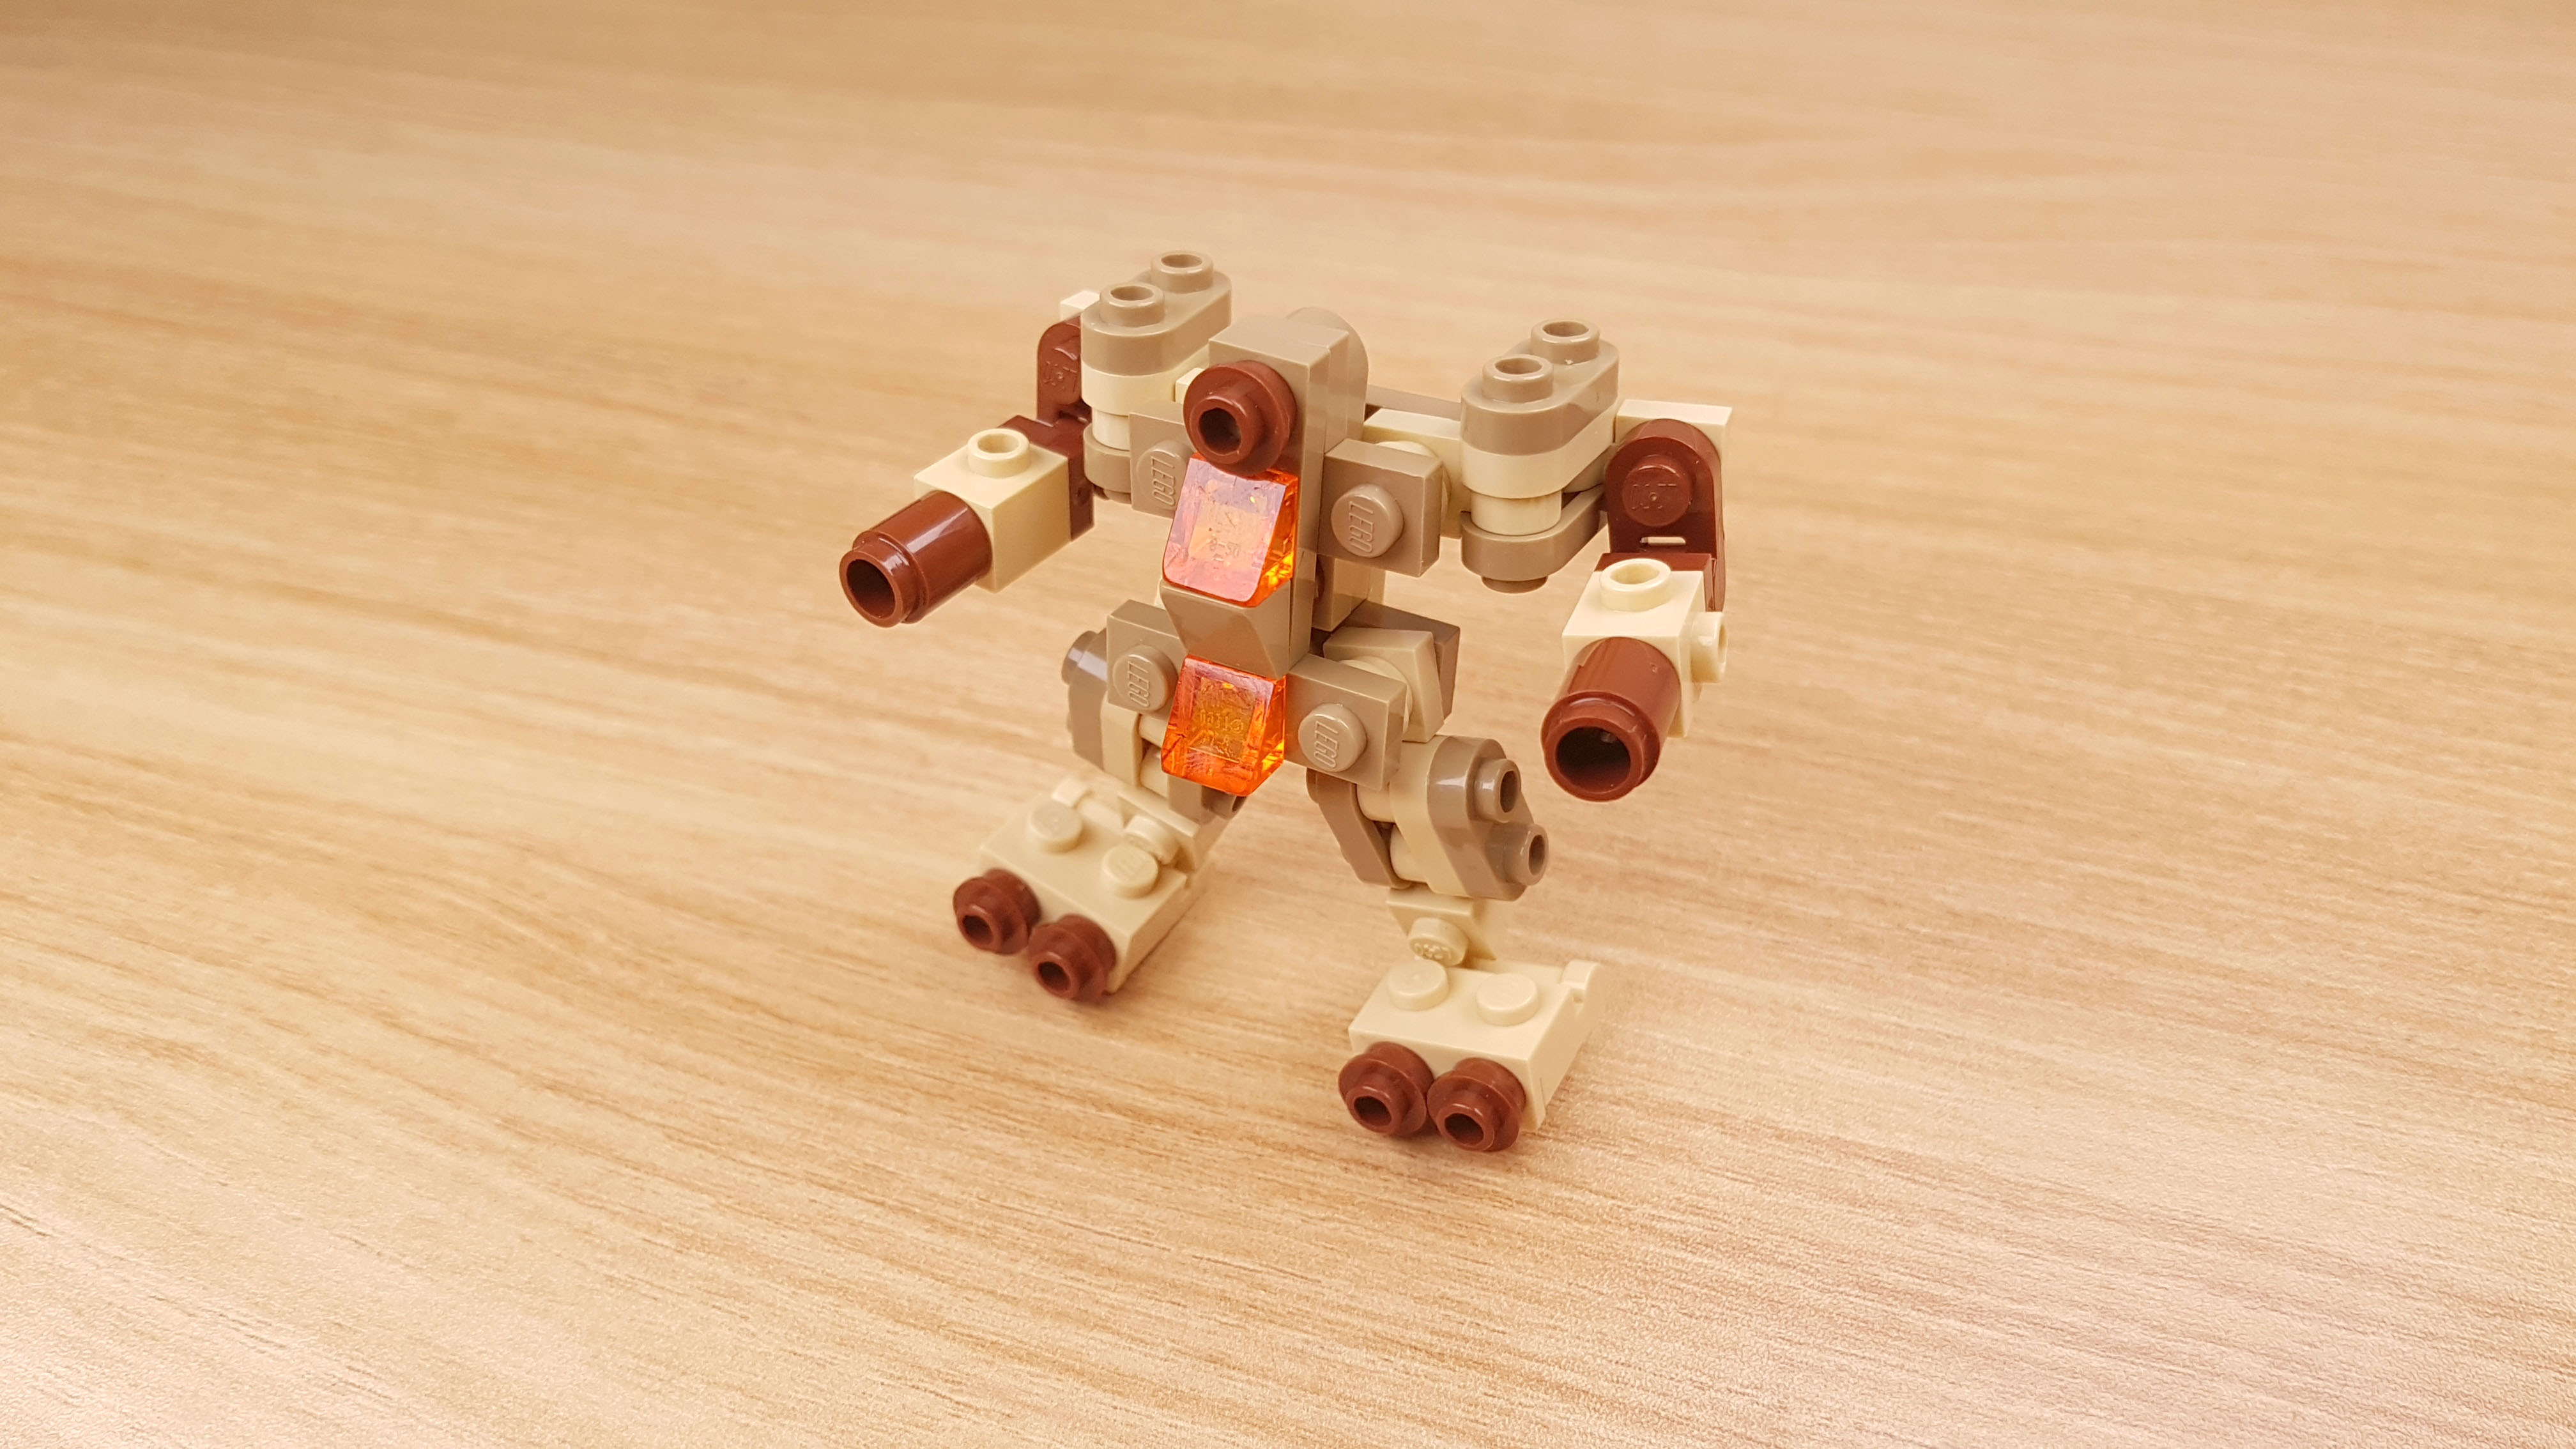 砂漠作戦用で開発した2段合体ミニレゴロボ - 「タン・ボット」
 1 - 変身,変身ロボ,レゴ変身ロボ